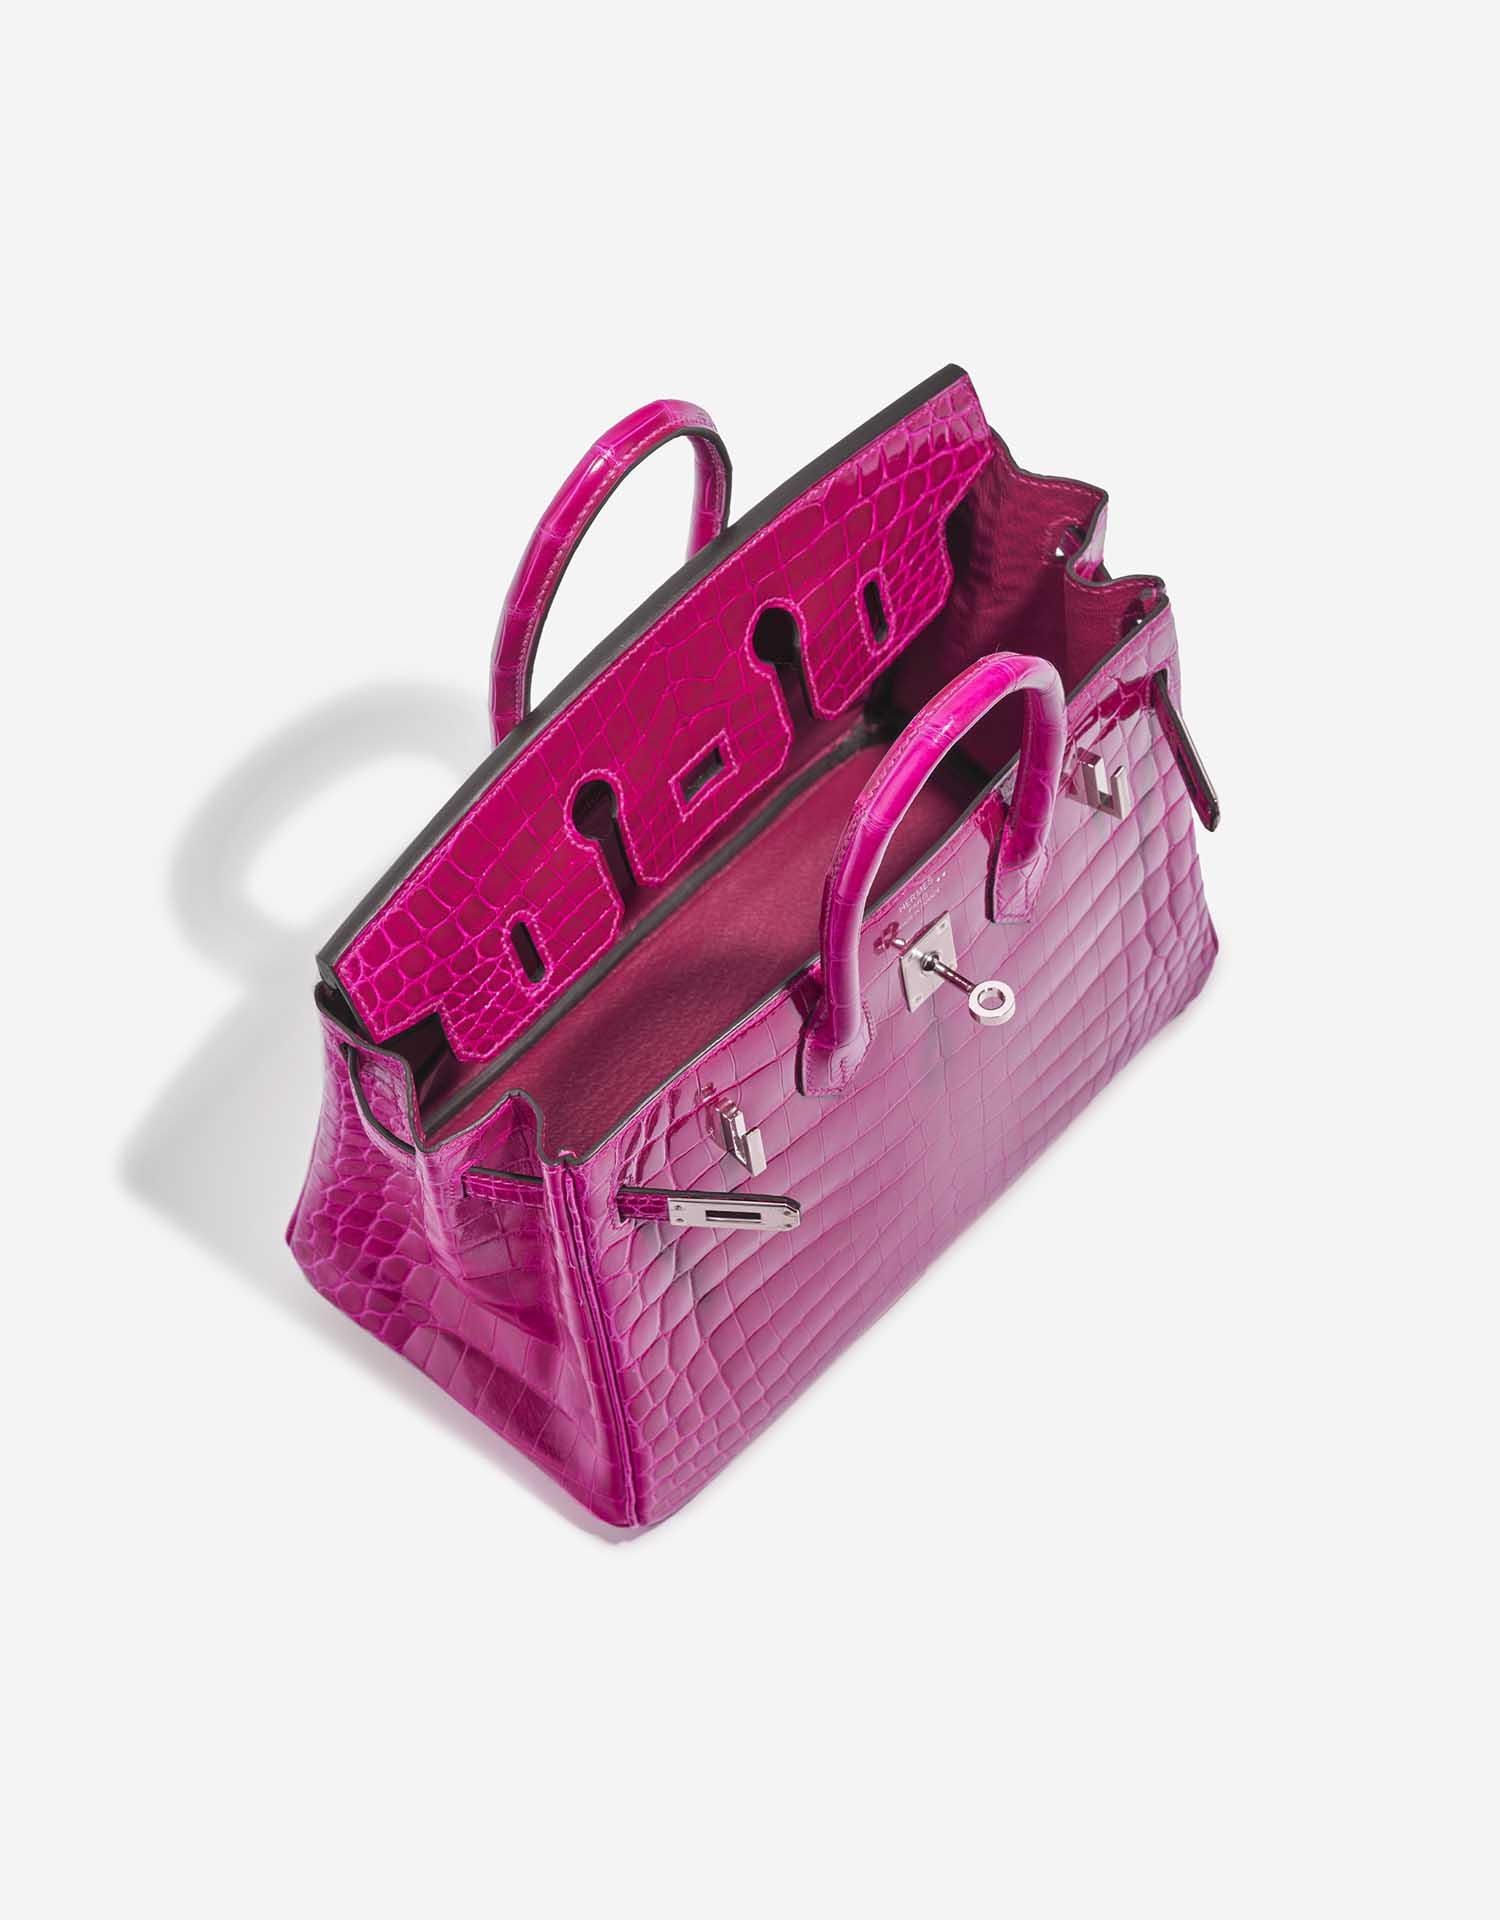 Hermès Birkin 25 RosePourpre Inside | Verkaufen Sie Ihre Designertasche auf Saclab.com